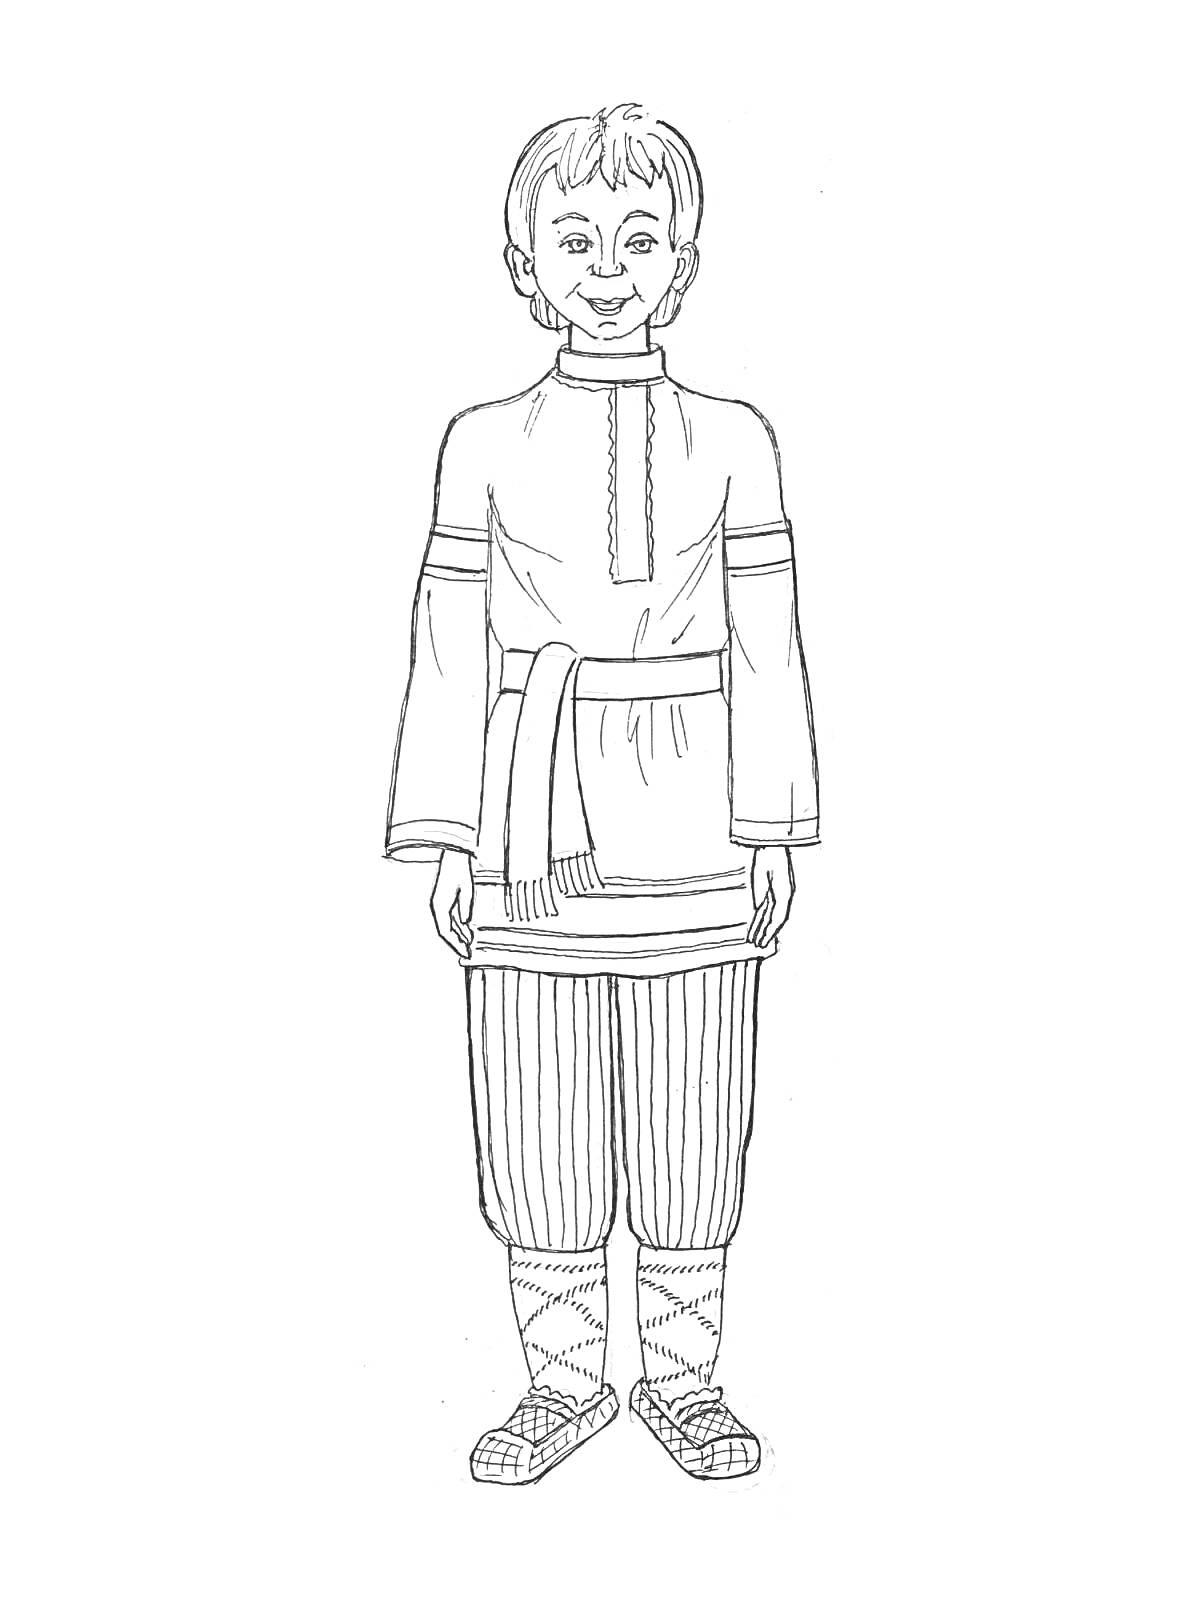 Мальчик в русском народном костюме с рубахой, поясом, штанами и лаптями